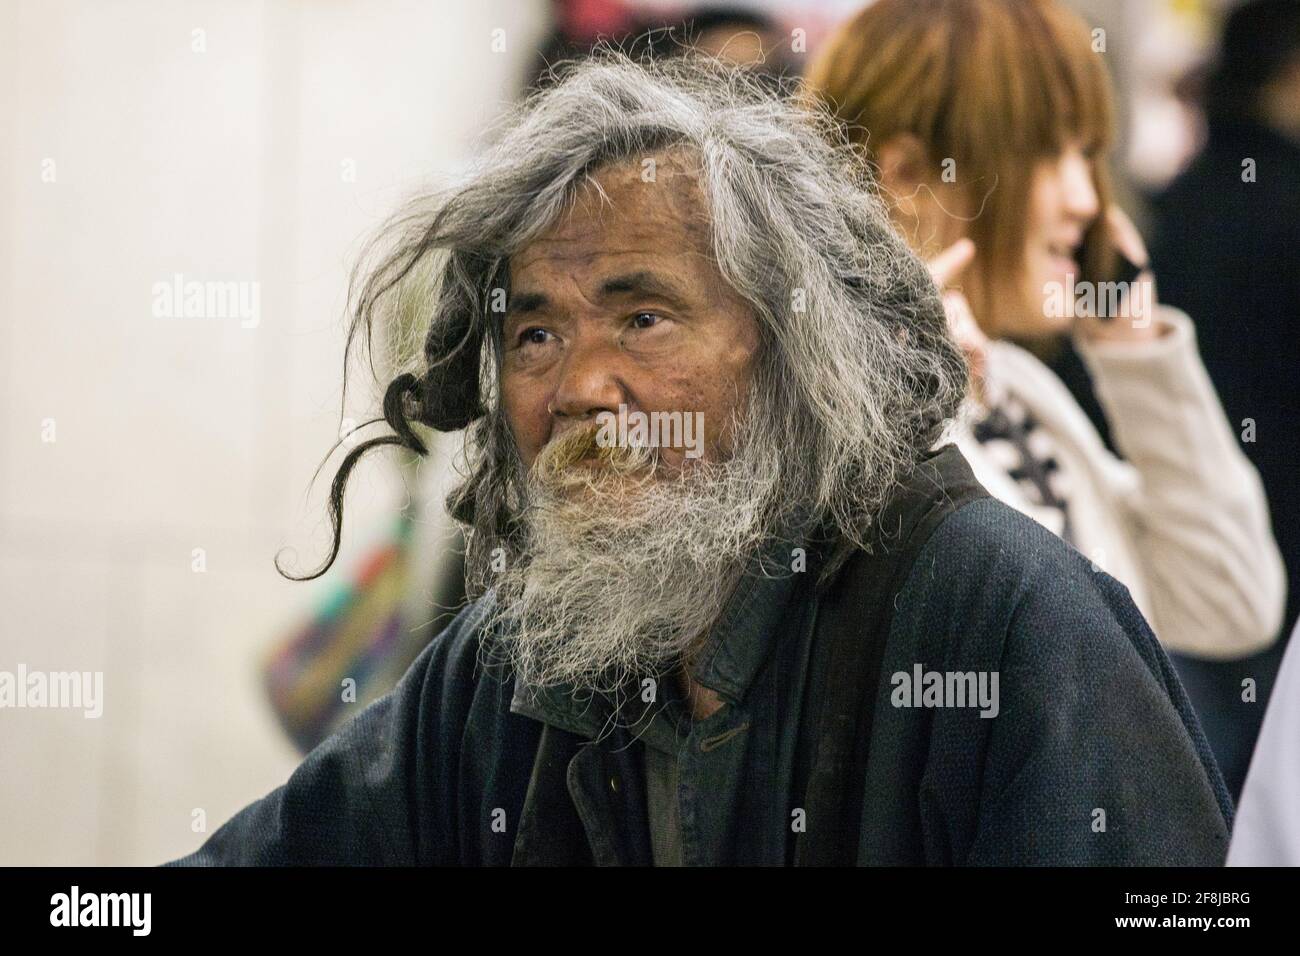 Nahaufnahme eines zerzaust, bärtigen, obdachlosen japanischen Mannes, Shinjuku-Station, Tokio, Japan Stockfoto